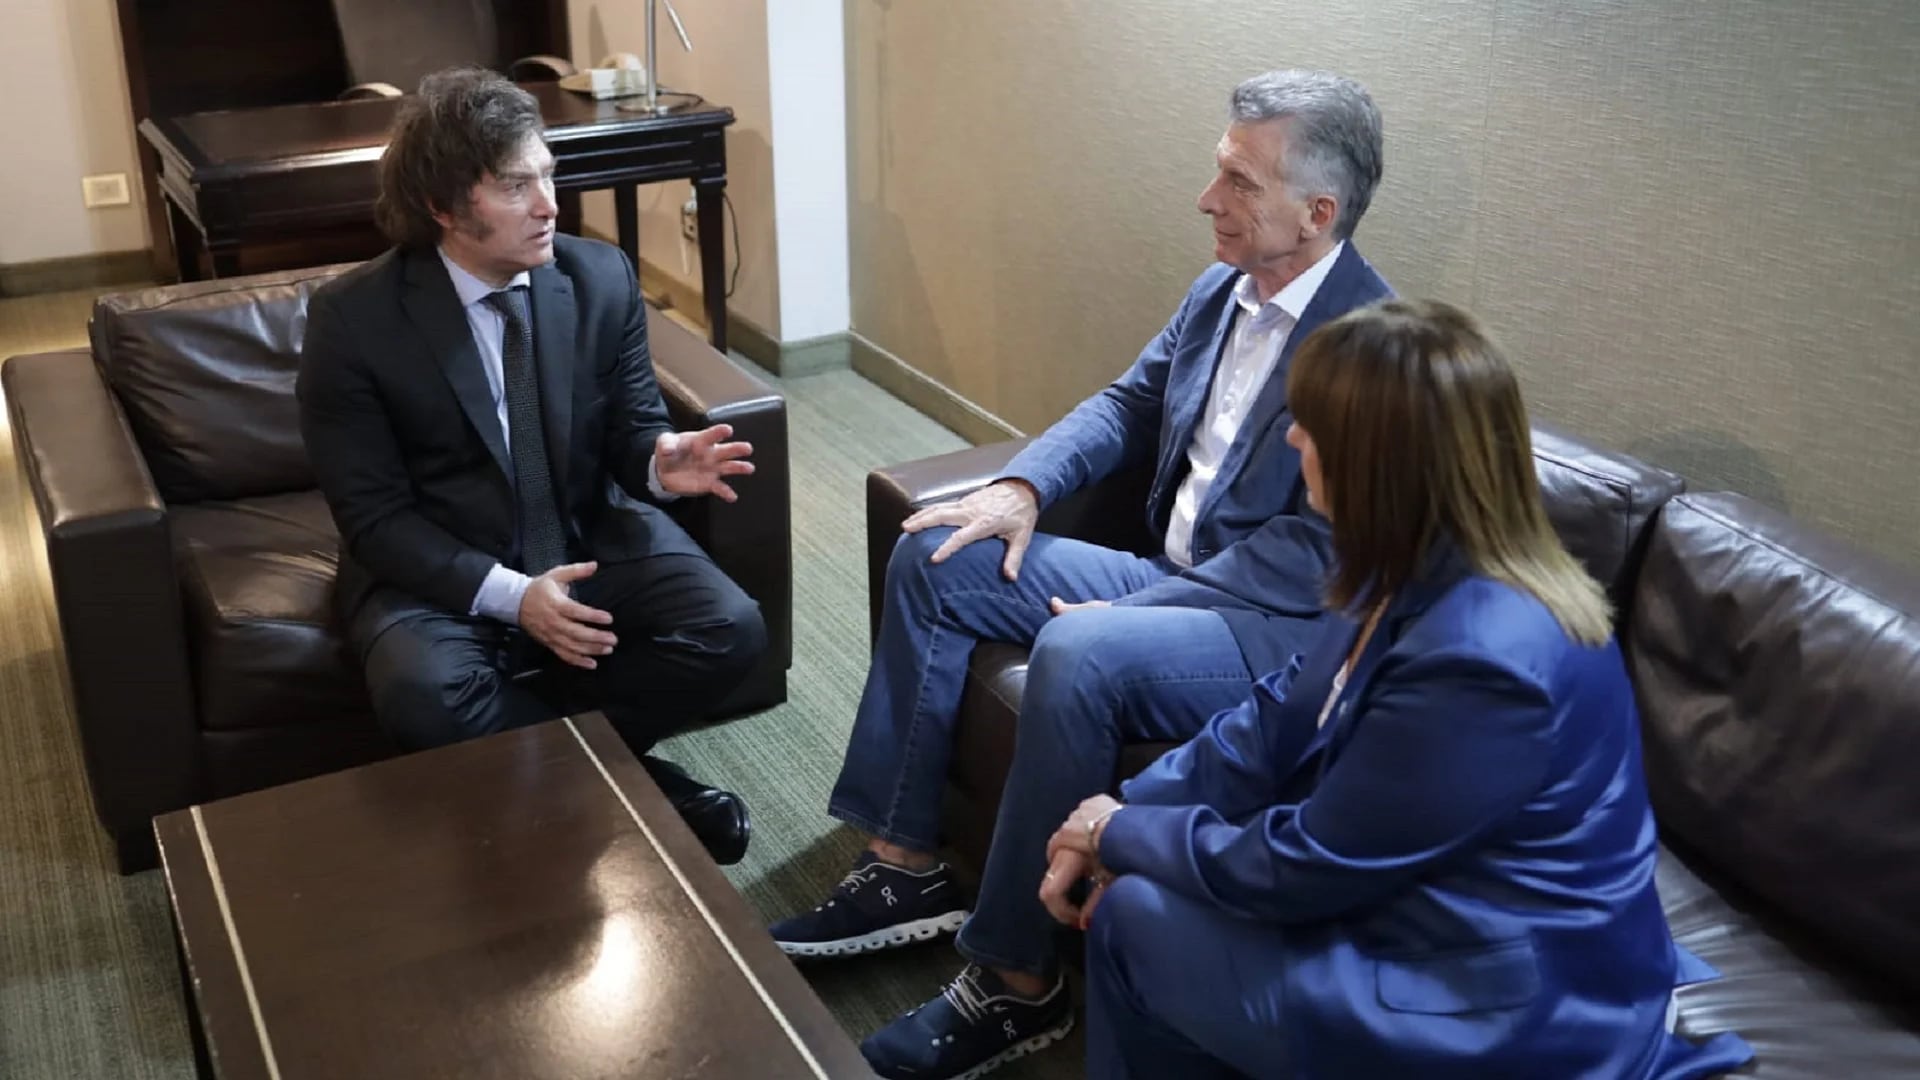 Avanza un acuerdo entre Milei y el partido de Macri, tras el revés legislativo del libertario en el Congreso